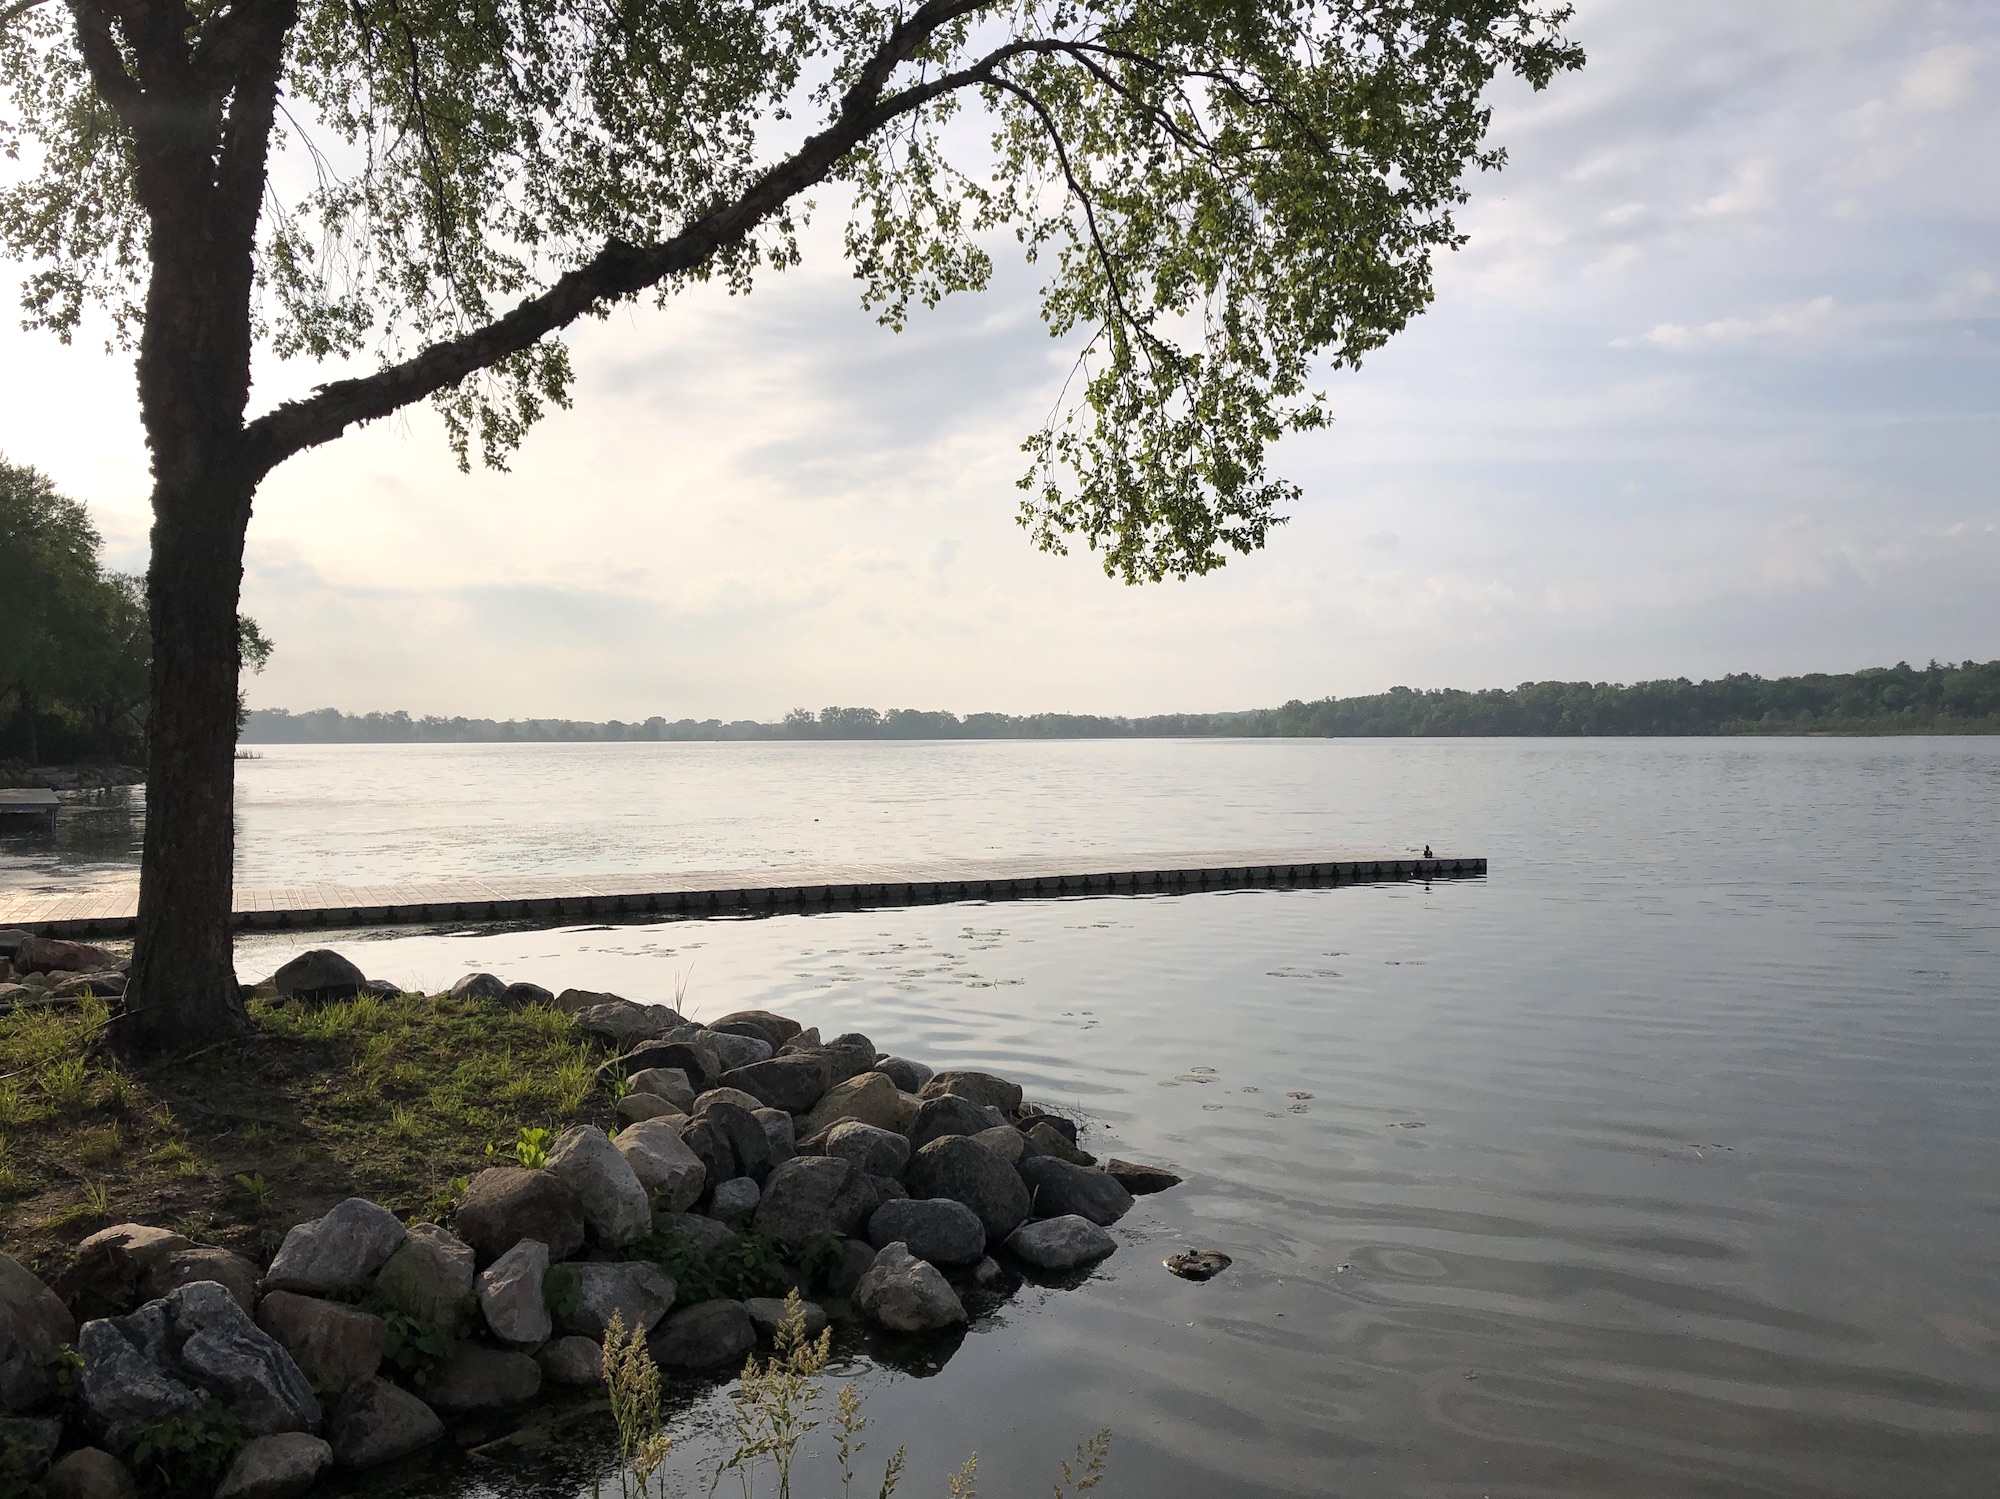 Lake Wingra on June 6, 2019.